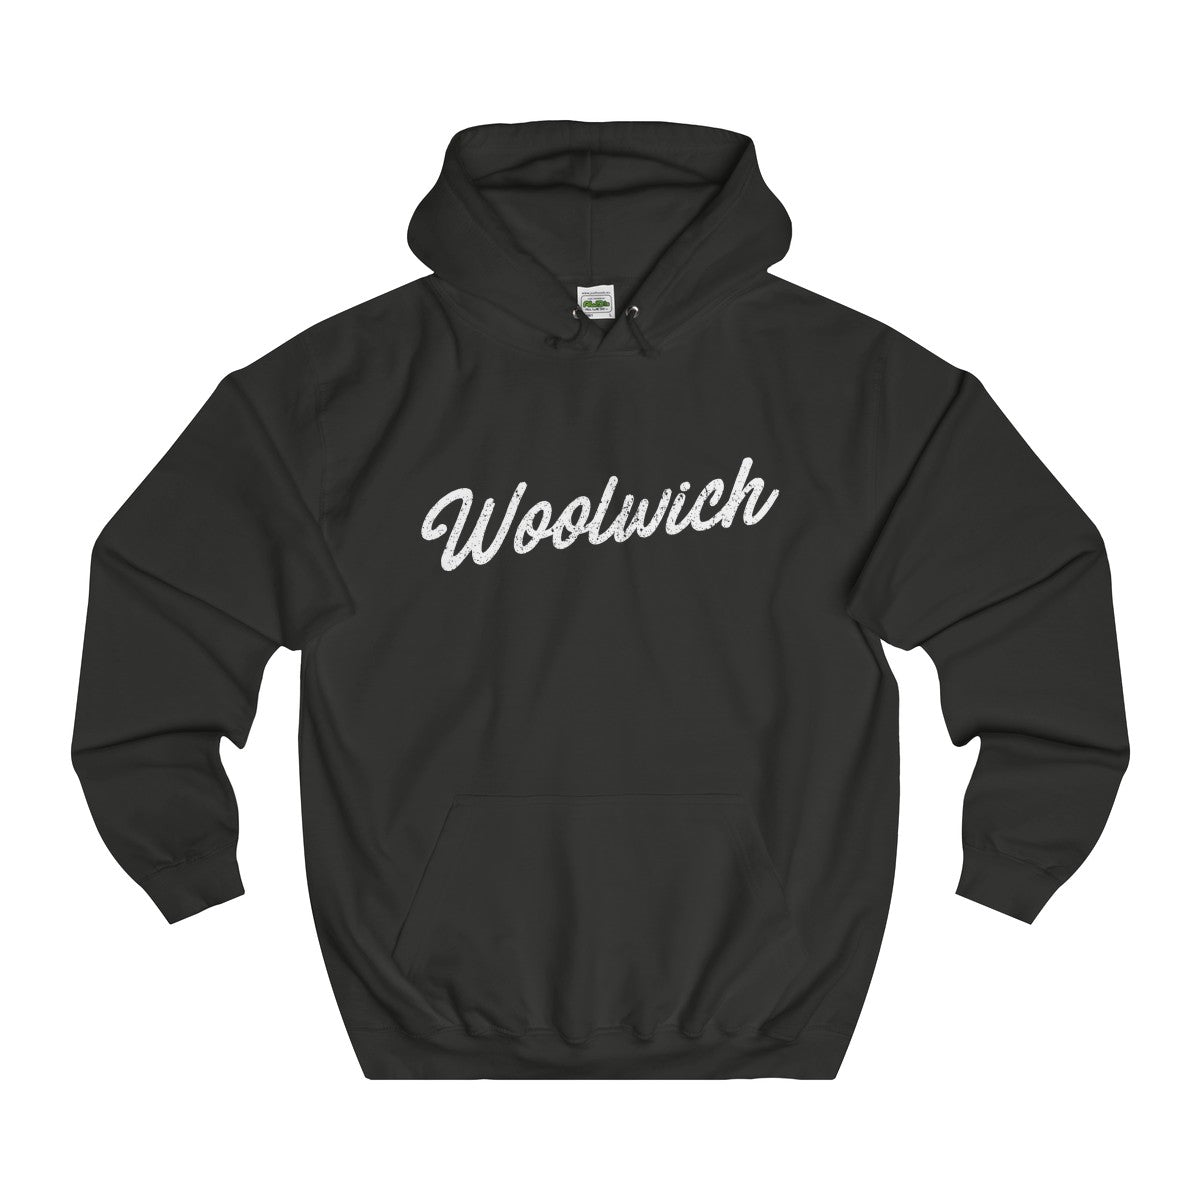 Woolwich Scripted Hoodie